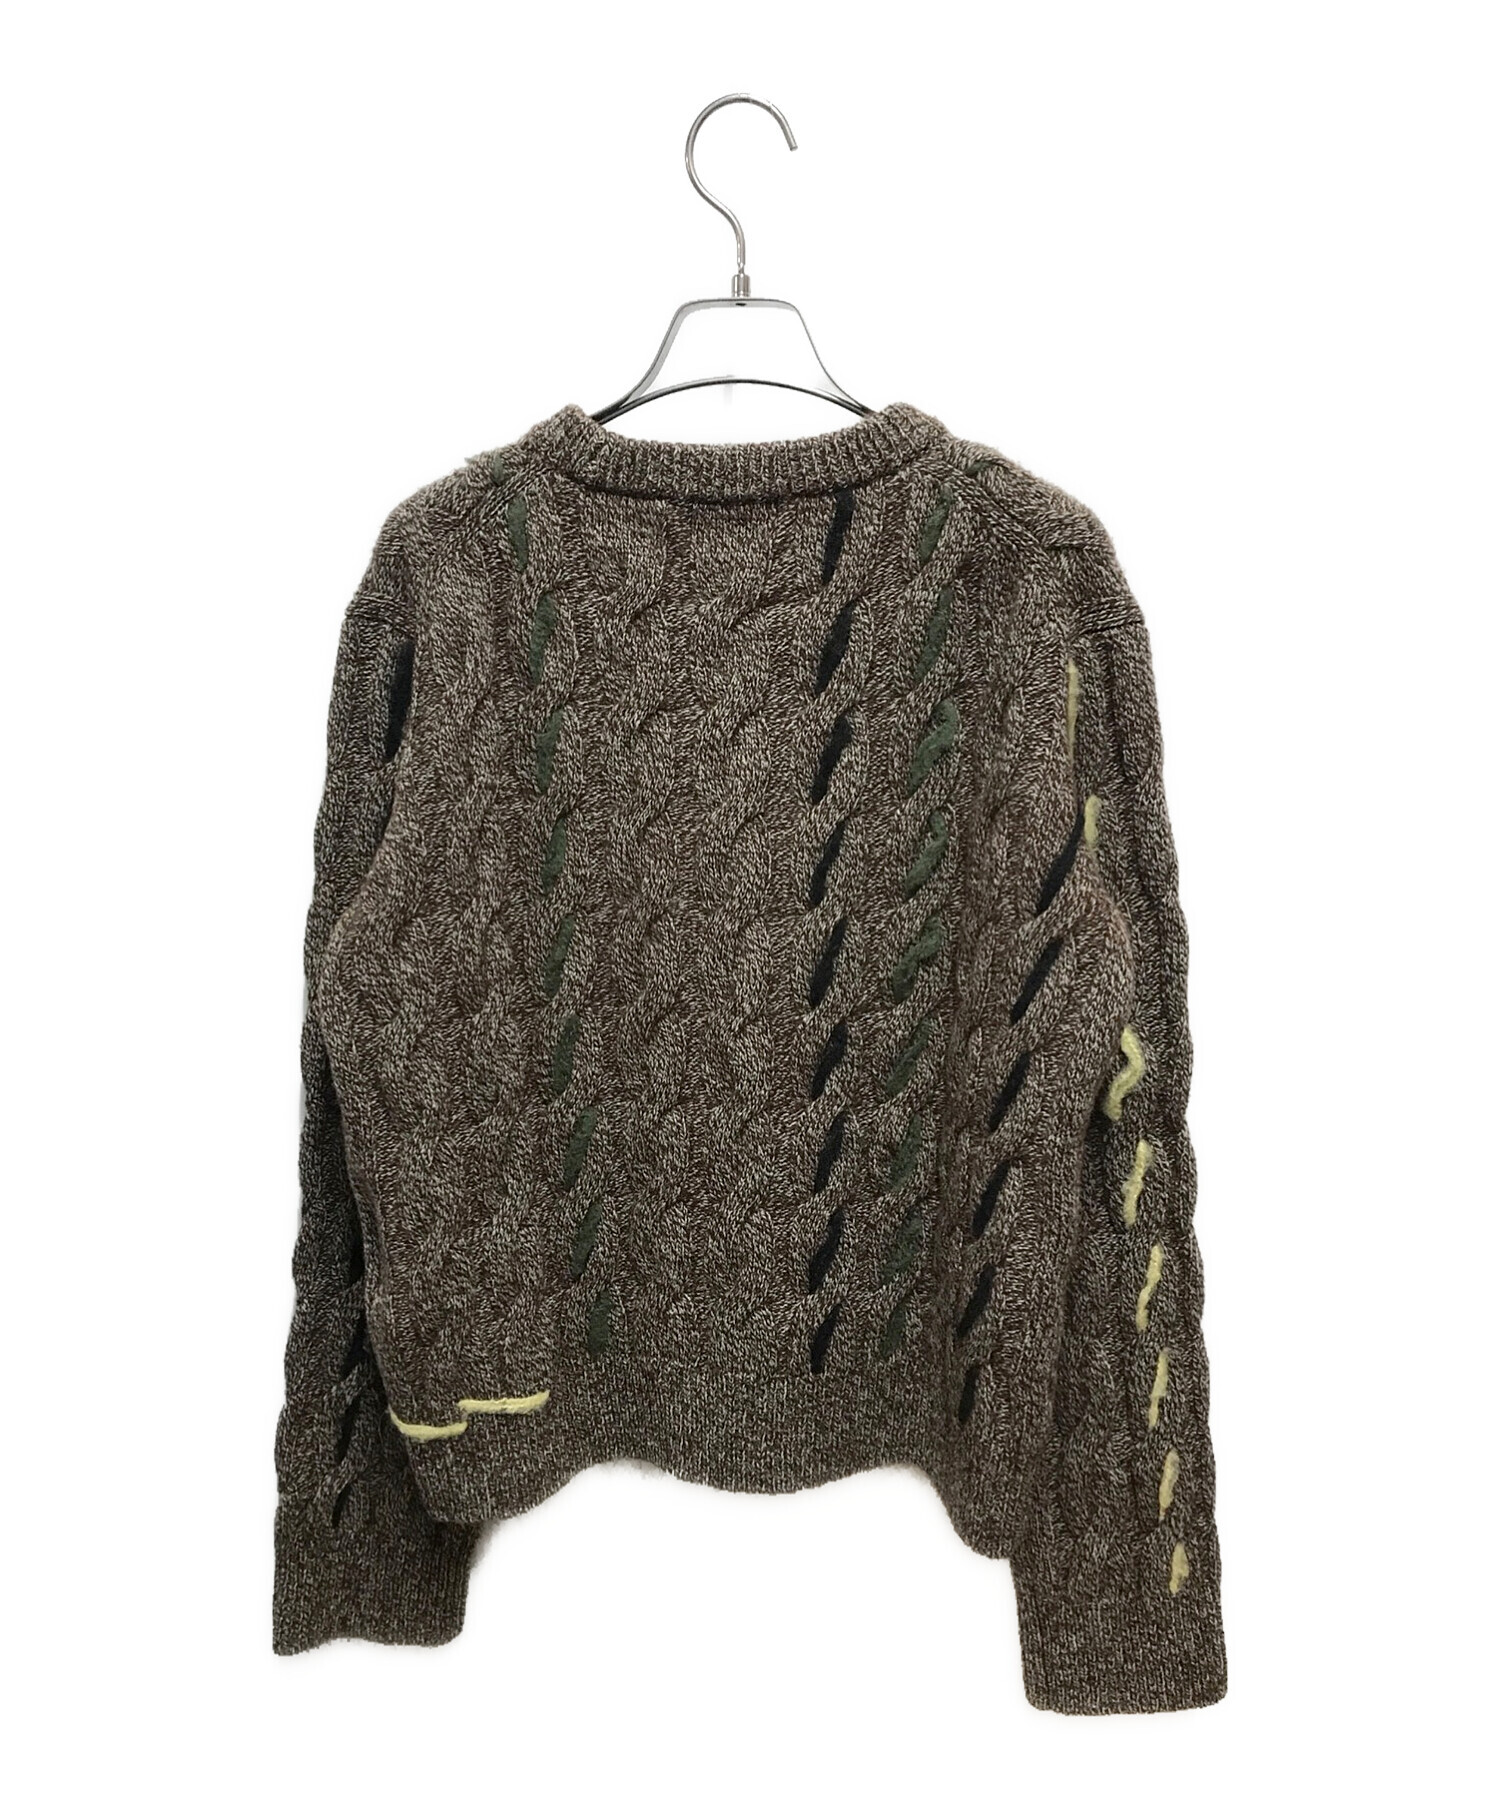 soduk (スドーク) soduk lined knit top ブラウン サイズ:下記参照